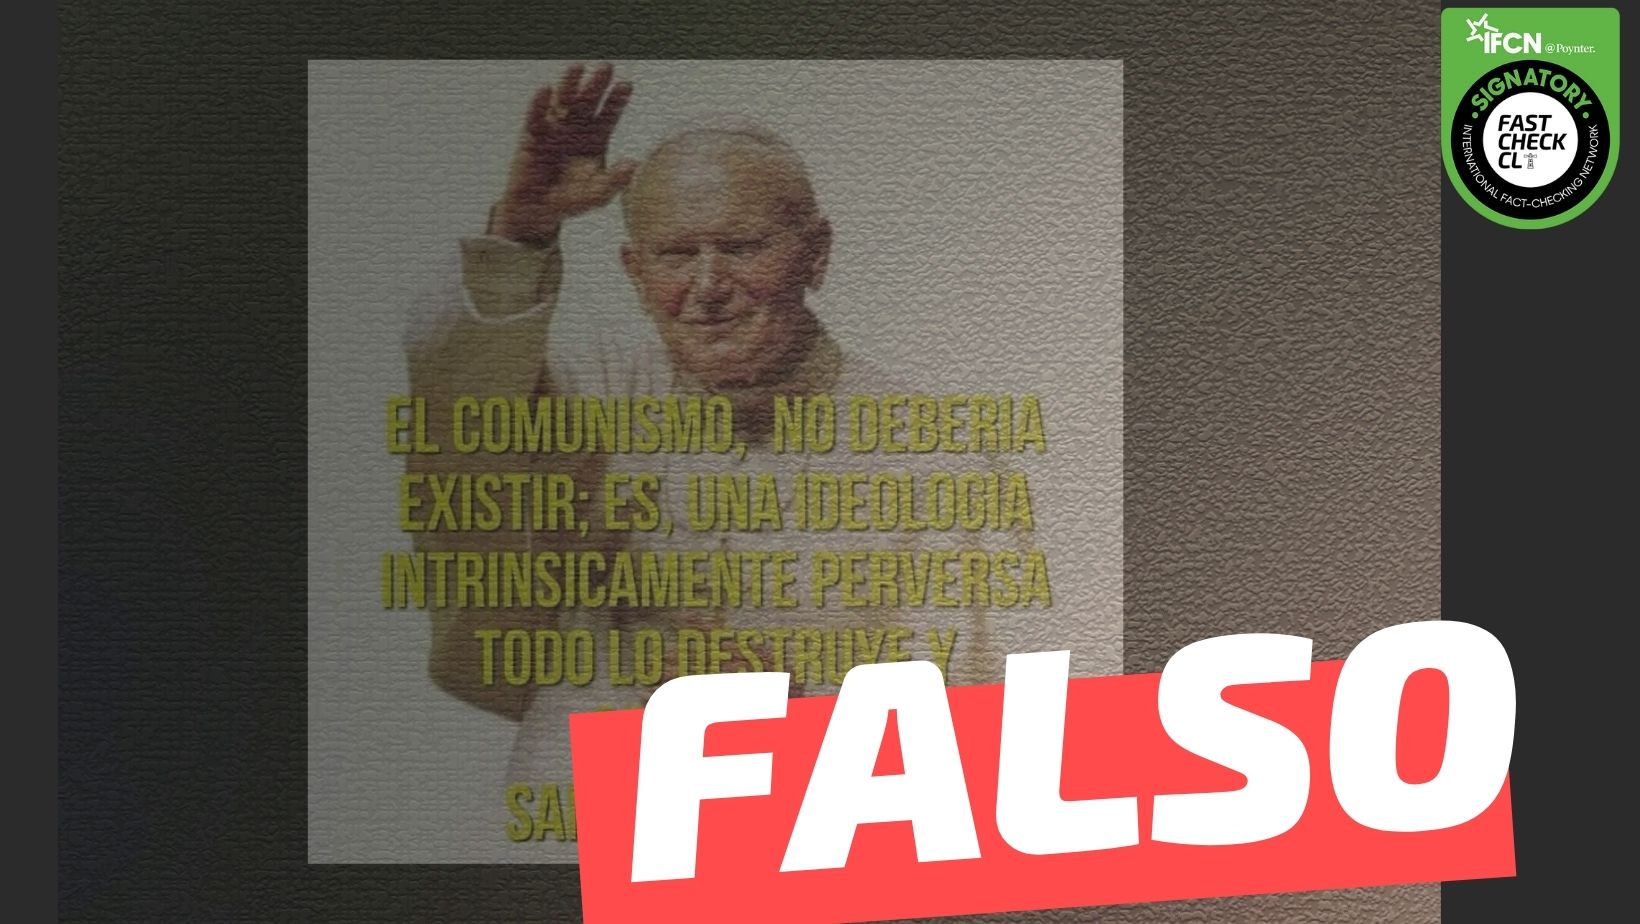 Read more about the article Papa Juan Pablo II: “El comunismo no debería existir; es una ideología intrínsicamente perversa, todo lo destruye y corrompe”: #Falso